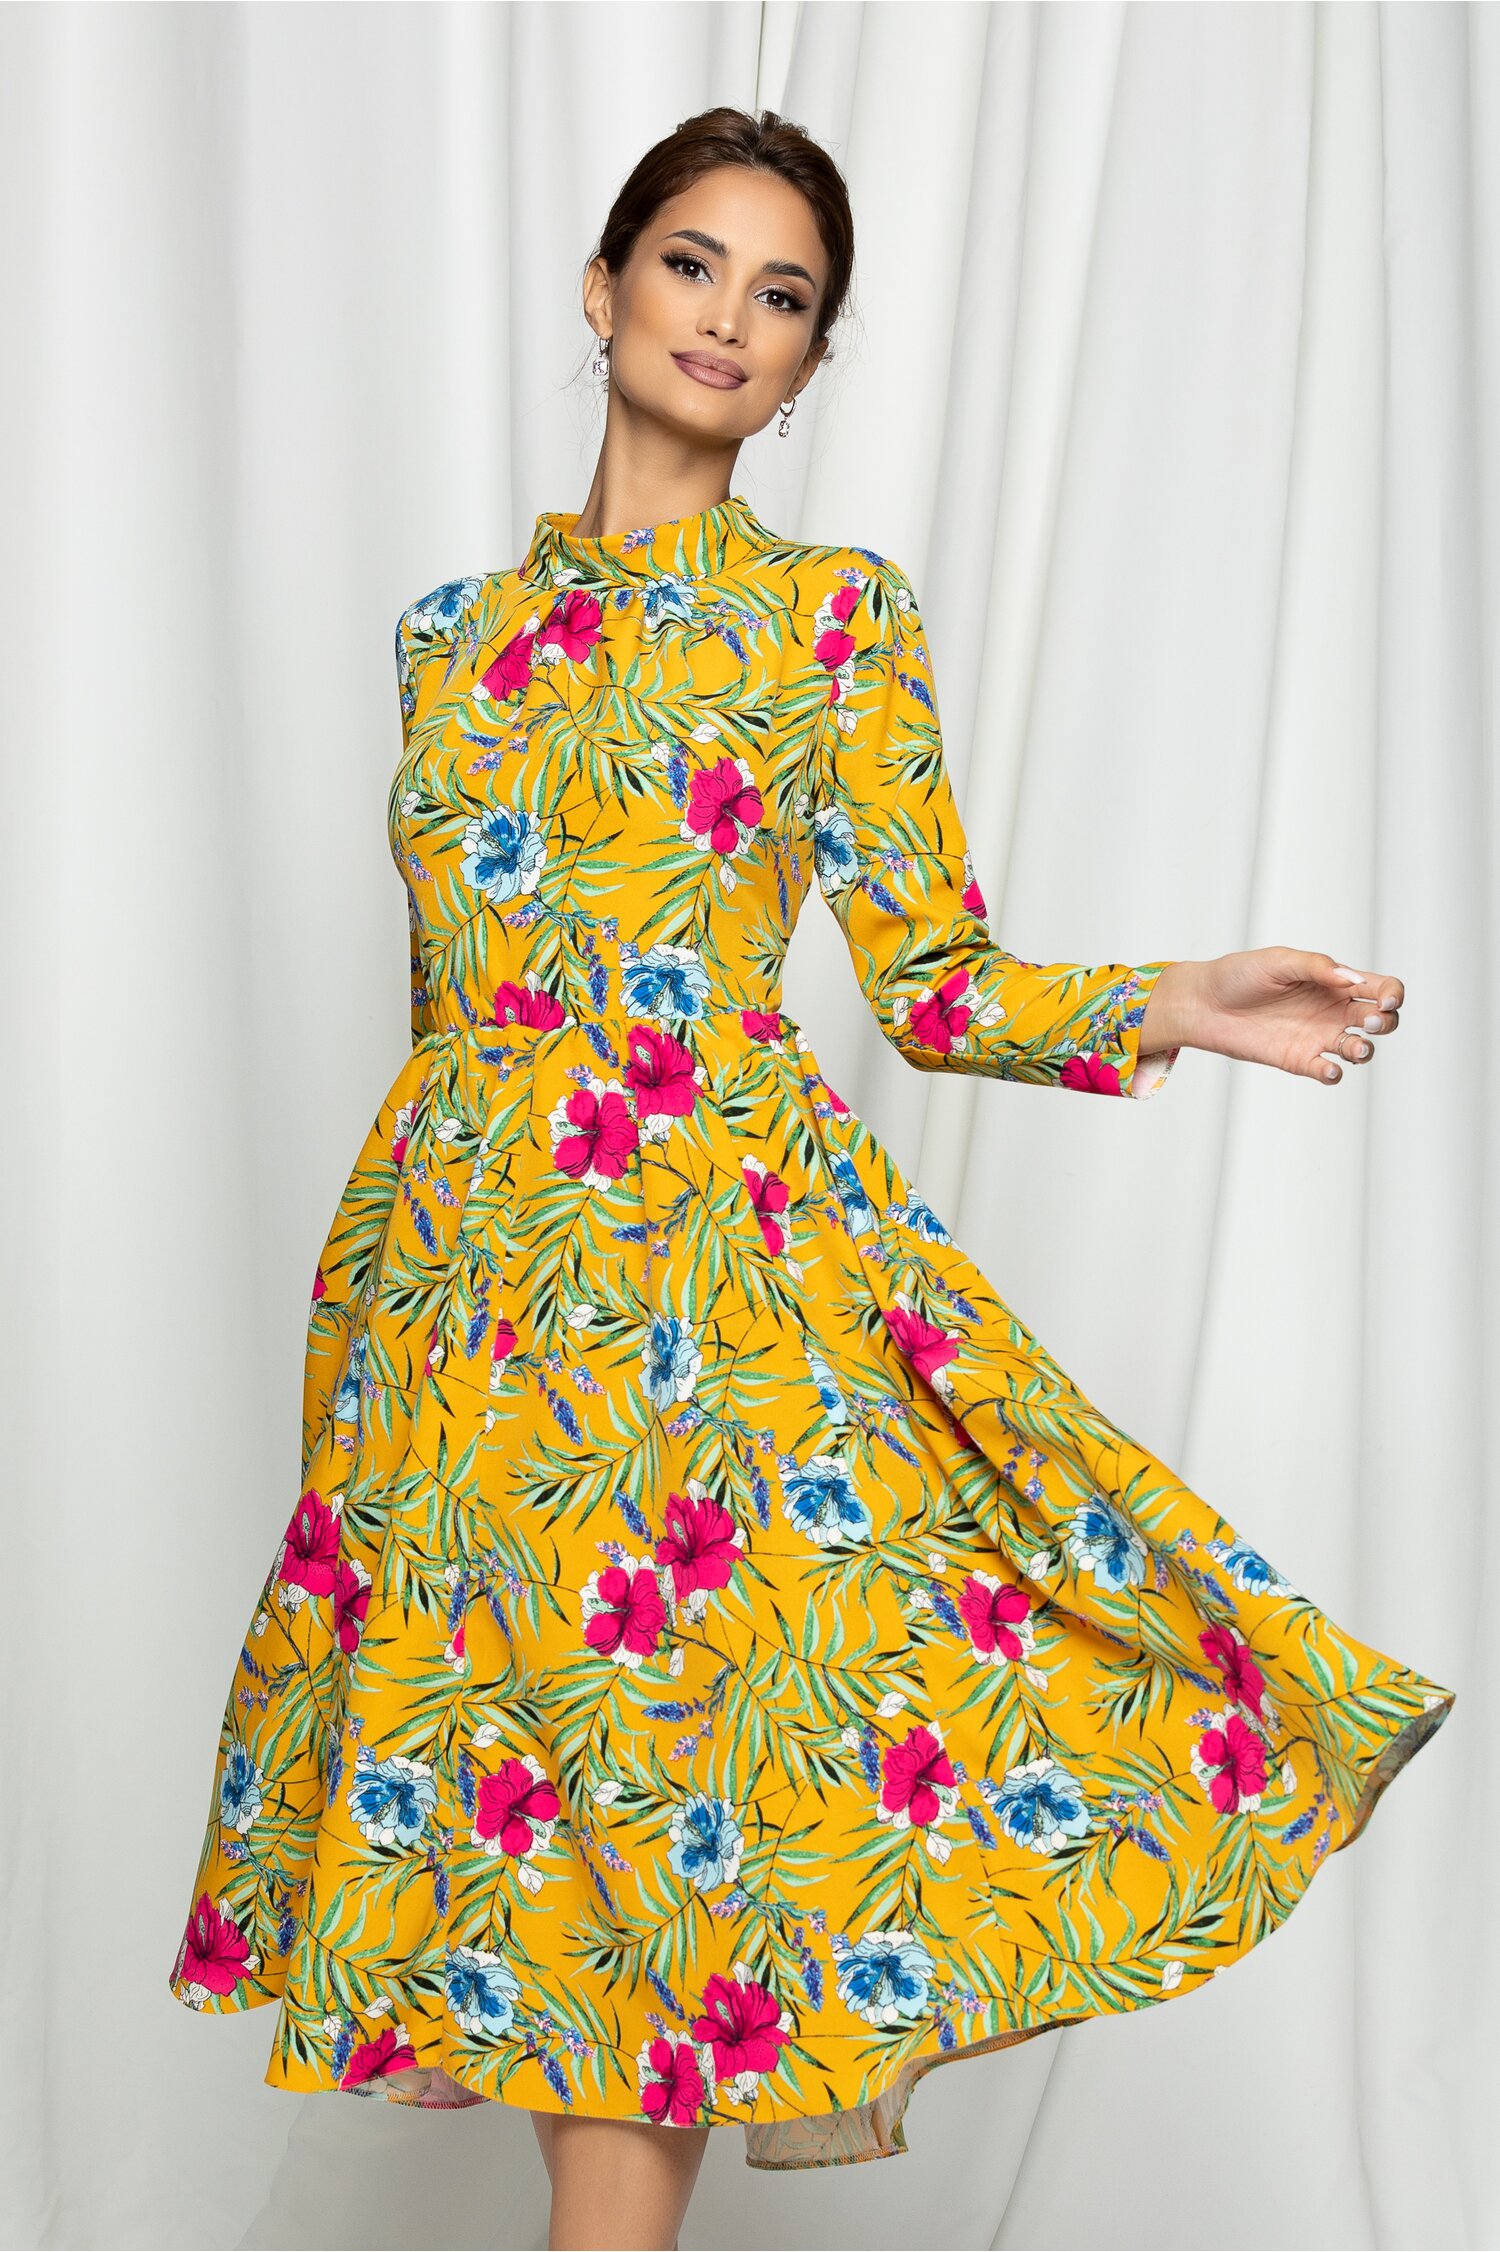 Rochie Dy Fashion galben midi cu imprimeu floral multicolor dyfashion.ro imagine megaplaza.ro